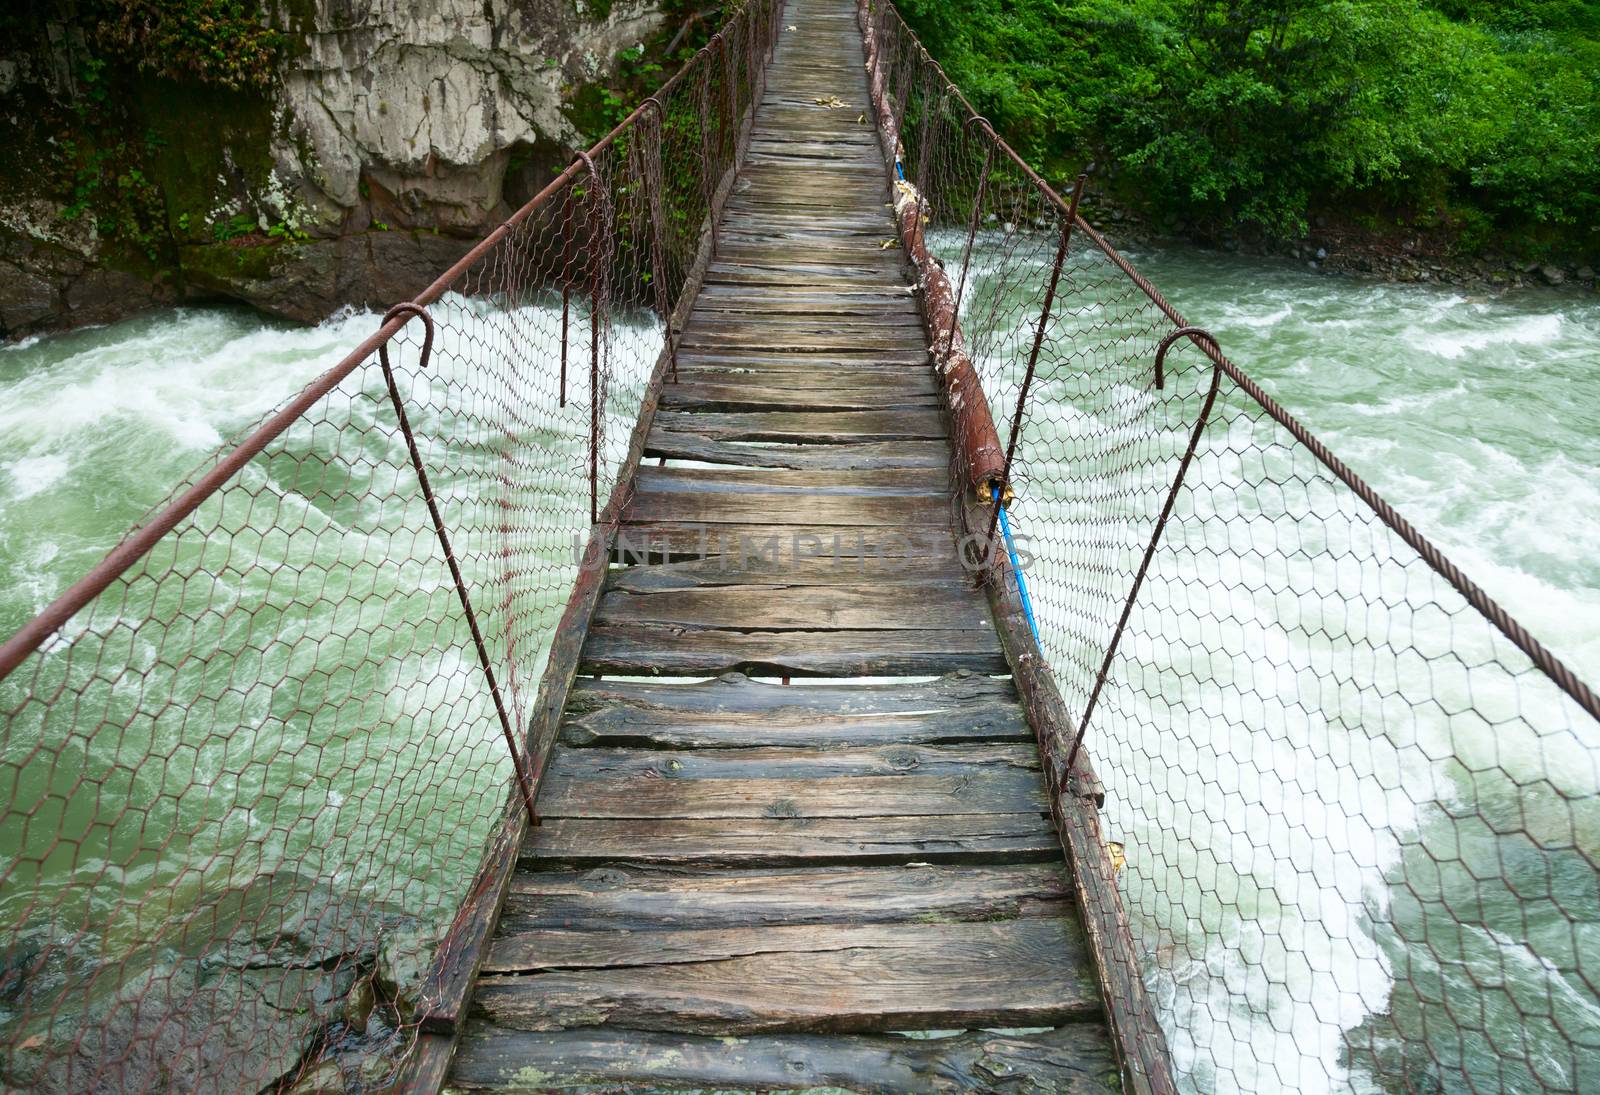 Suspension walking bridge by naumoid